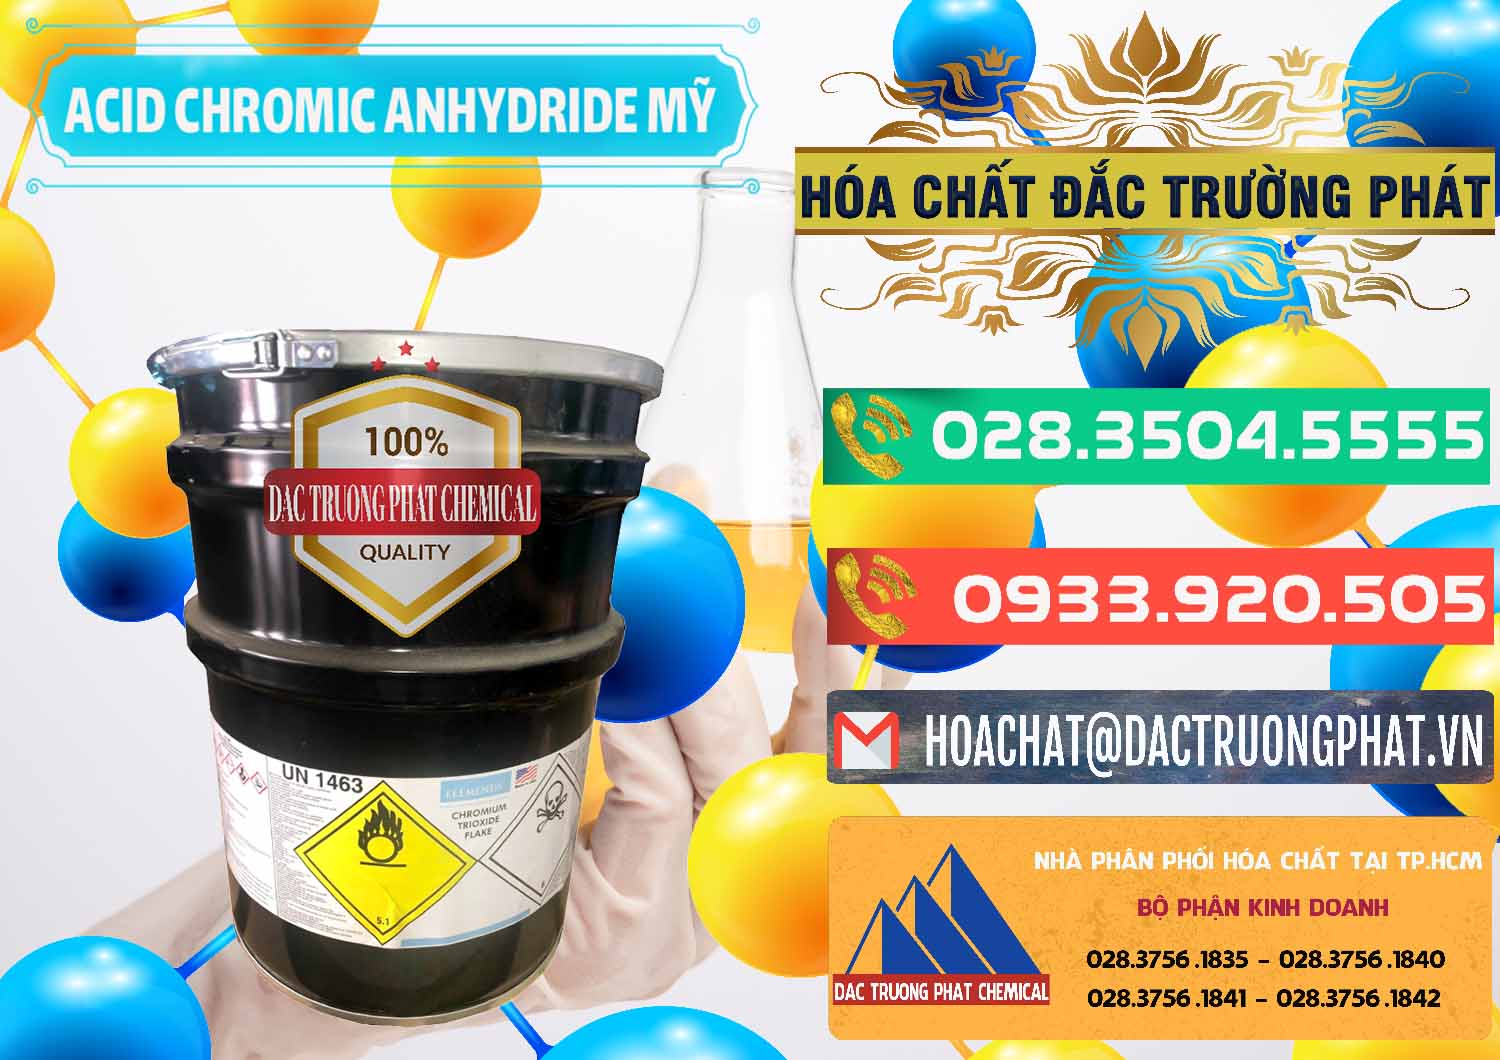 Đơn vị chuyên kinh doanh ( bán ) Acid Chromic Anhydride - Cromic CRO3 USA Mỹ - 0364 - Đơn vị kinh doanh - cung cấp hóa chất tại TP.HCM - congtyhoachat.com.vn